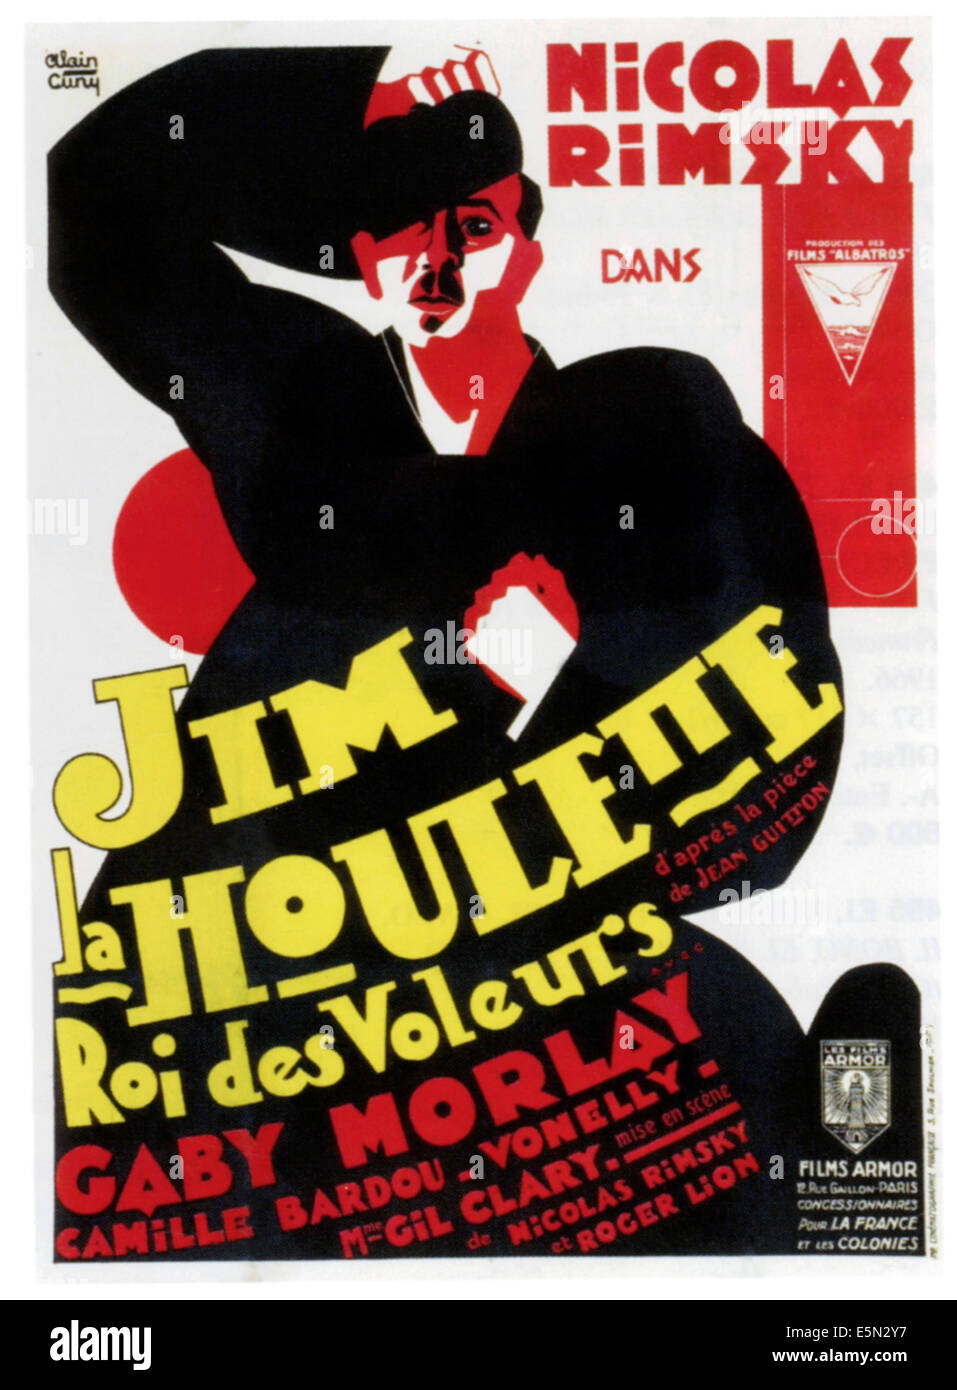 JIM LA HOULETTE, ROI DES VOLEURS, French poster art, 1926. Stock Photo